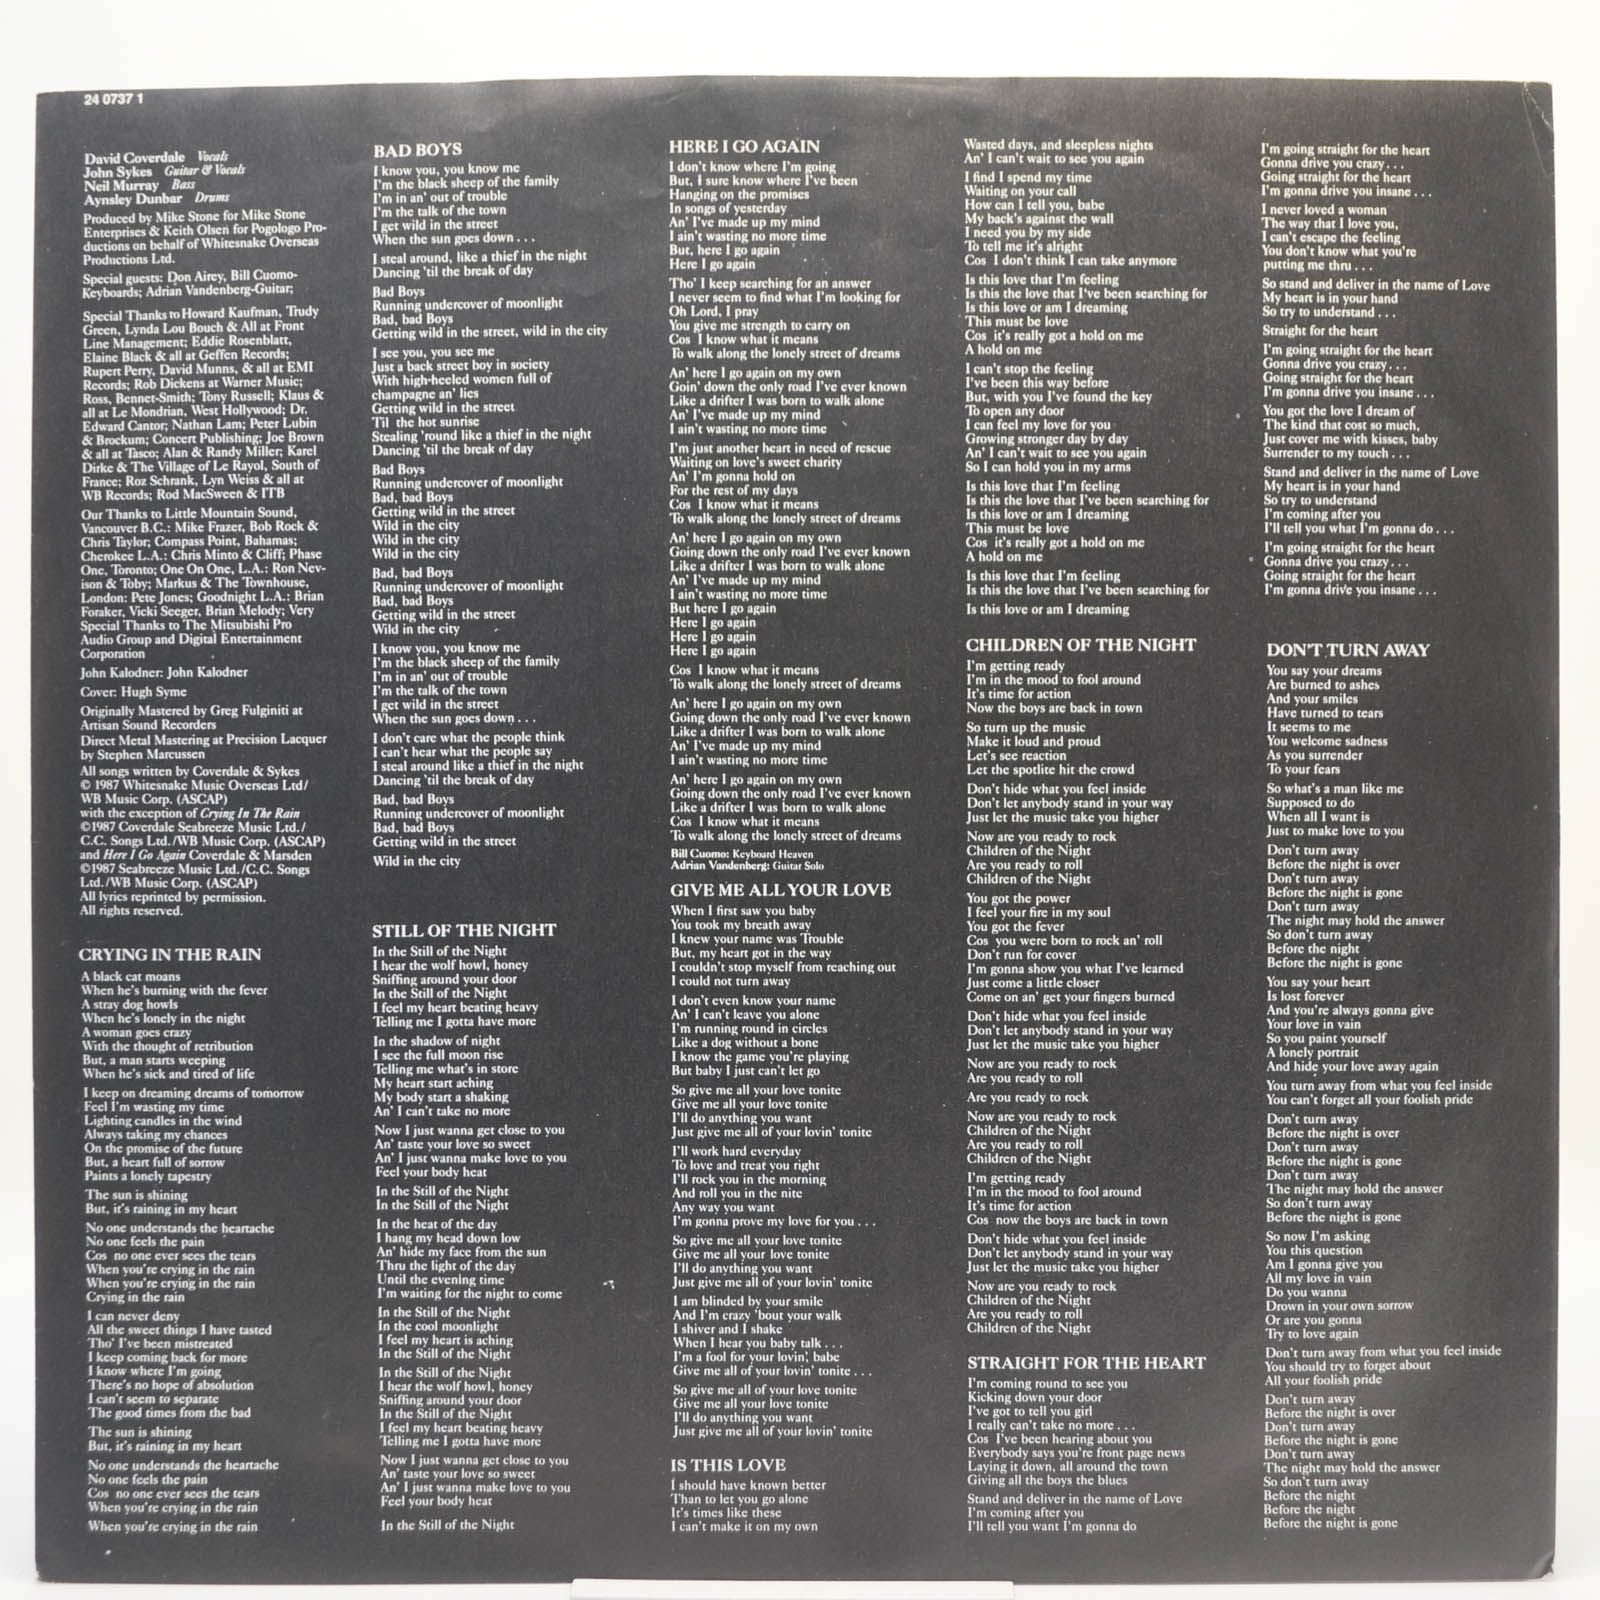 Whitesnake — 1987, 1987